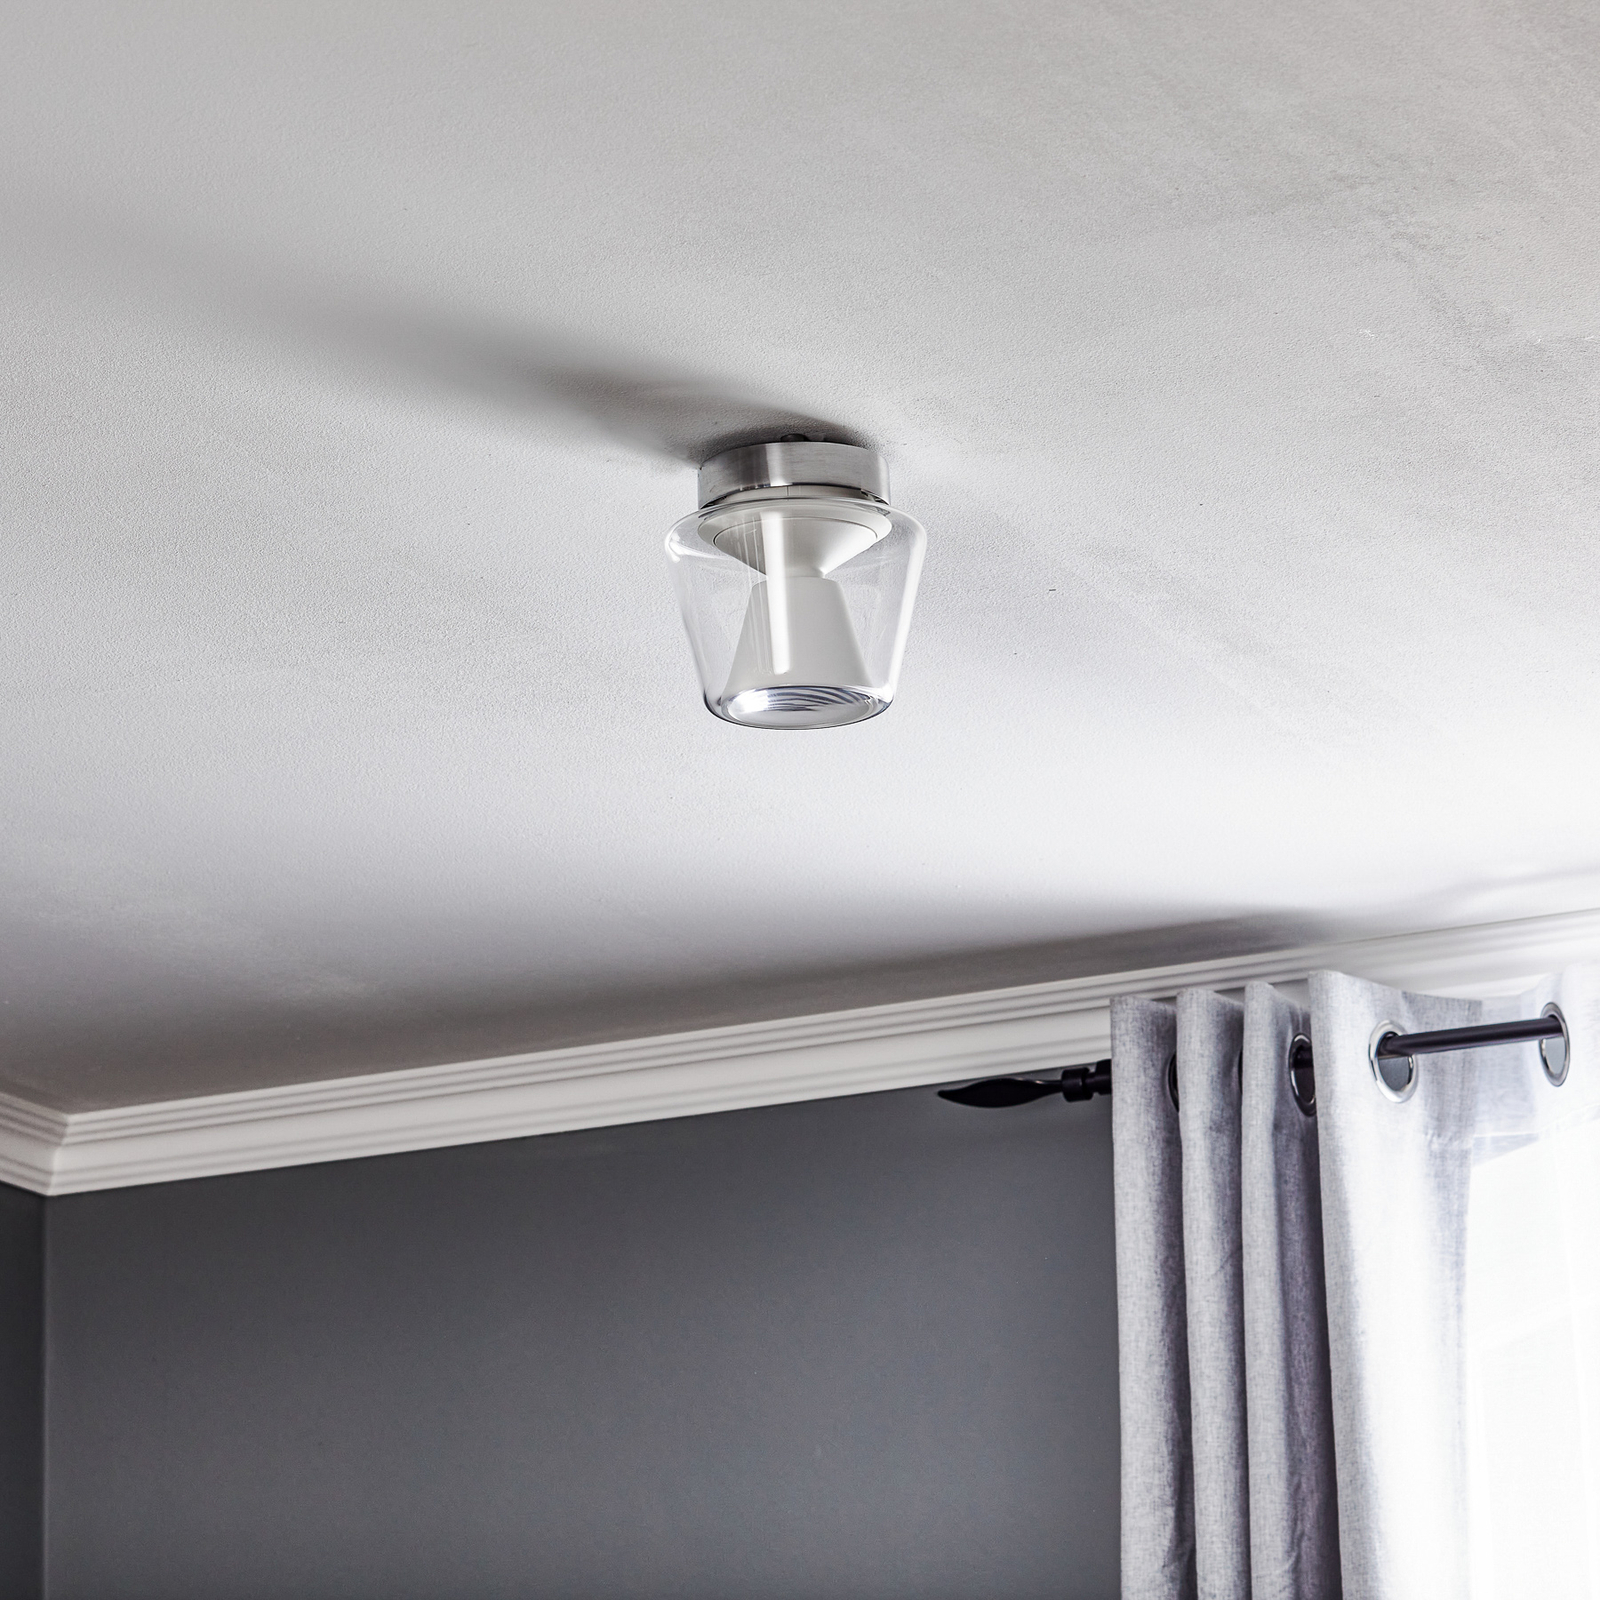 serien.lighting Annex S - LED ceiling lamp, opal